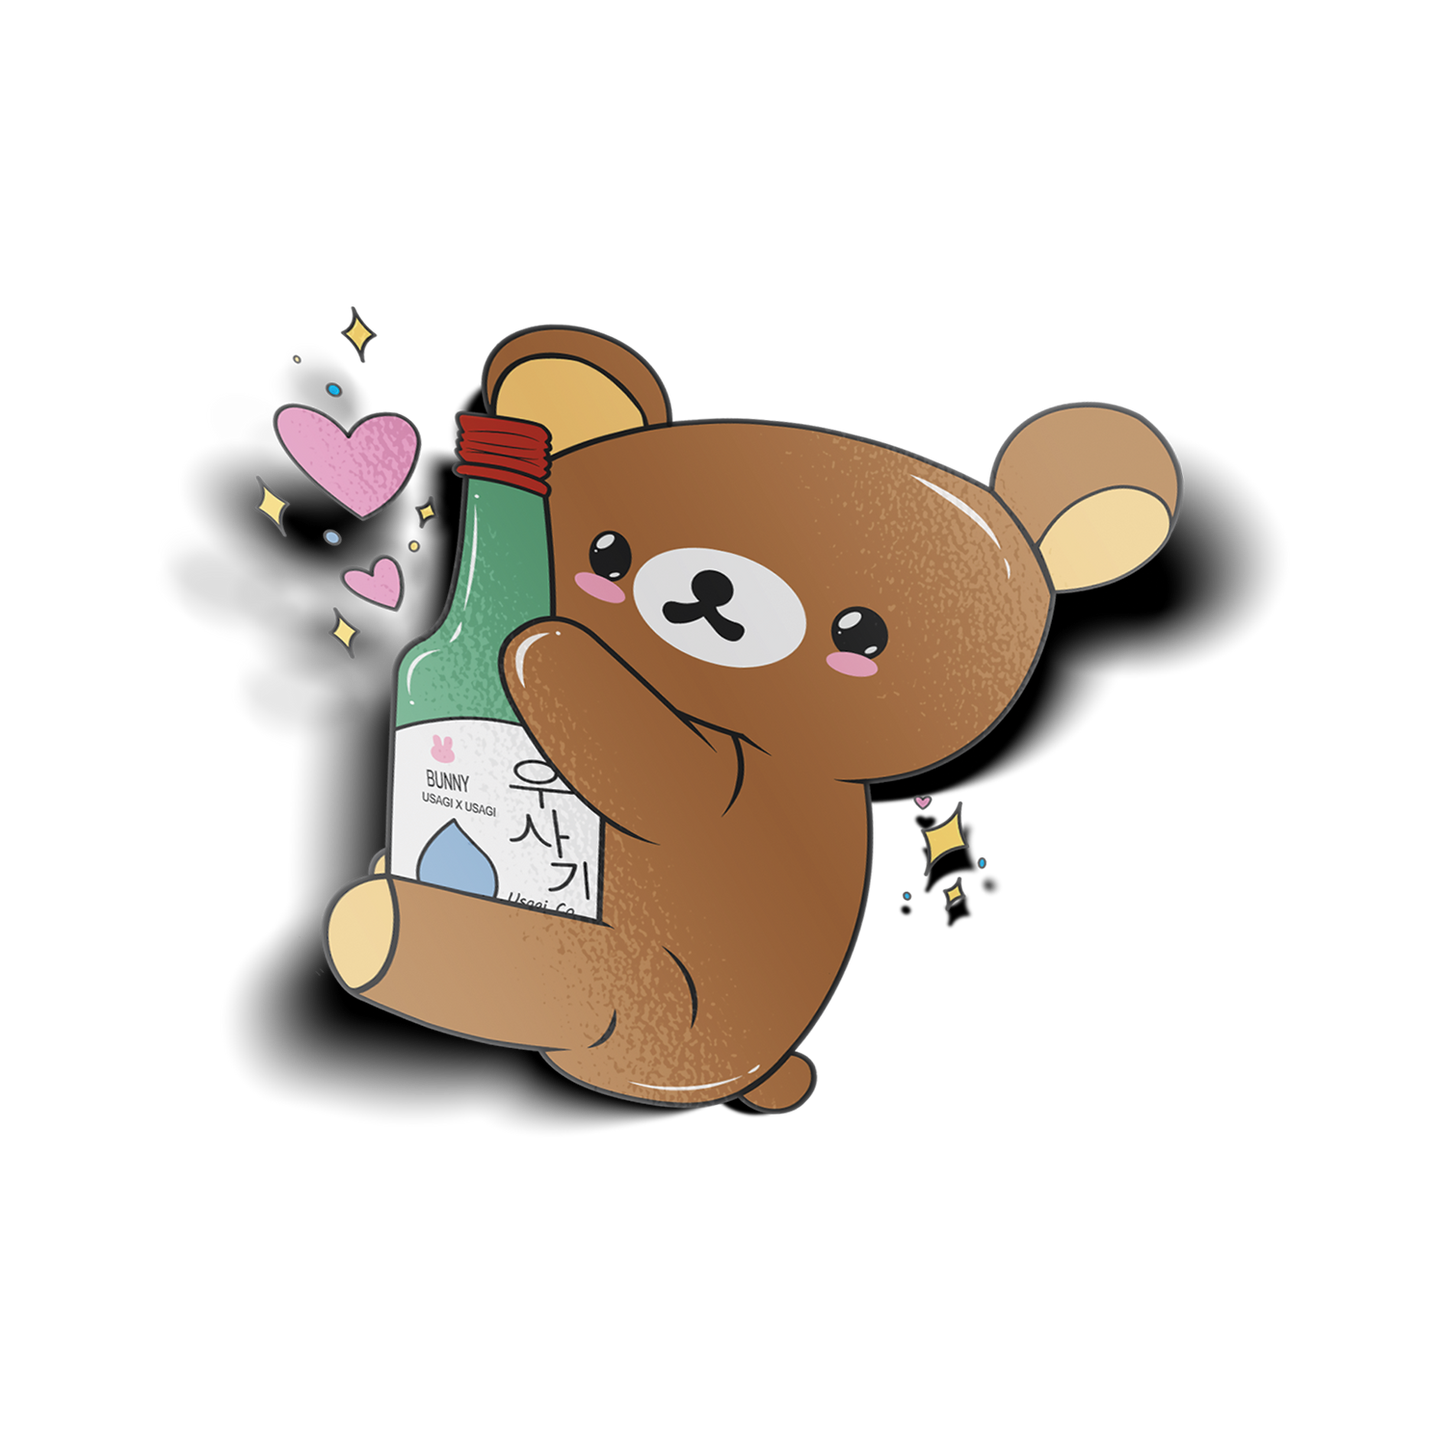 Soju Kuma Sticker design features brown bear holding a soju bottle.